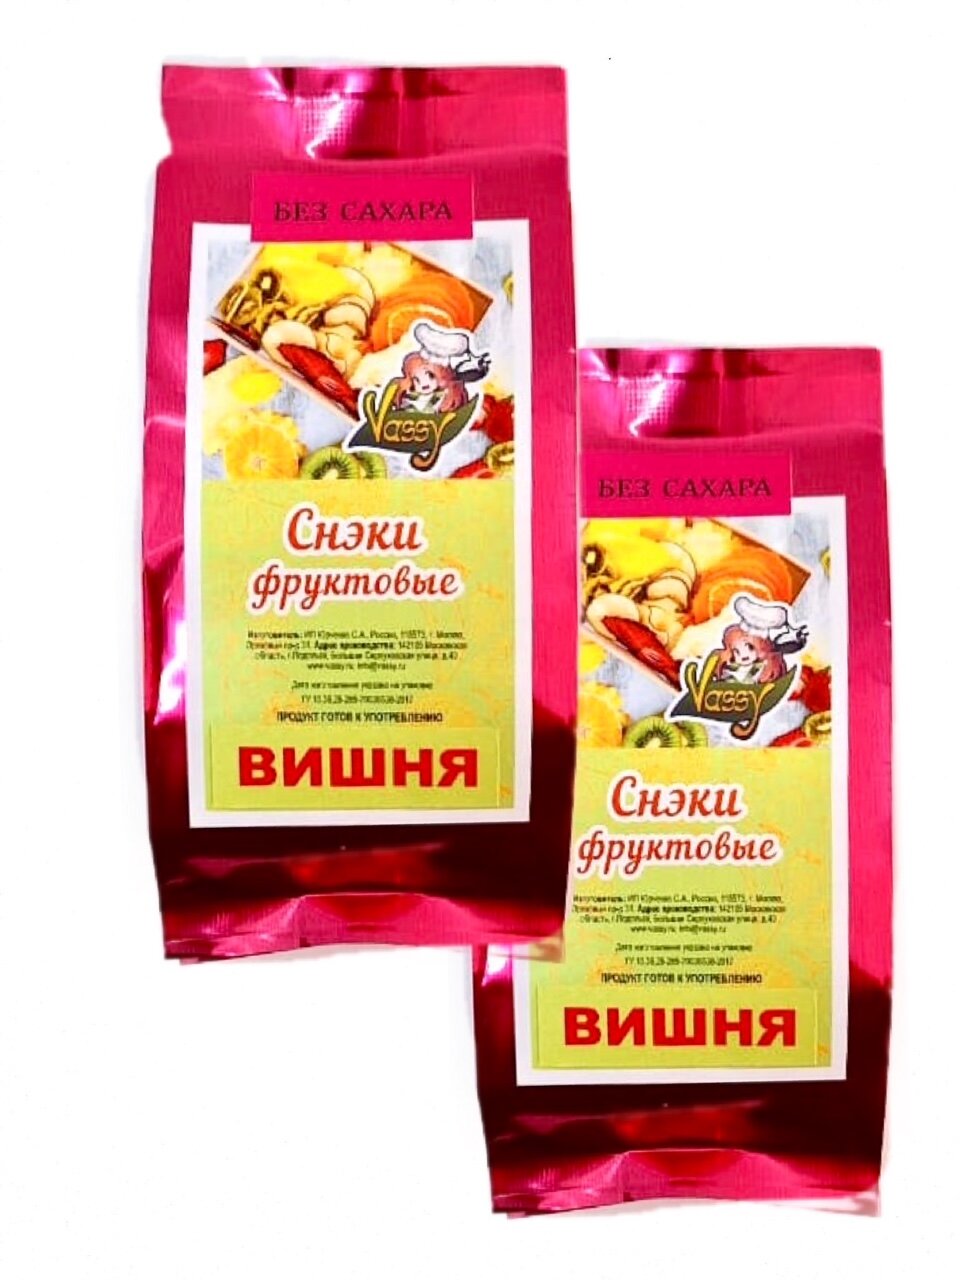 Вишня Натуральная Сушеная Vassy, без сахара, 160 гр.( 2 шт. по 80 Гр.) Double Pack